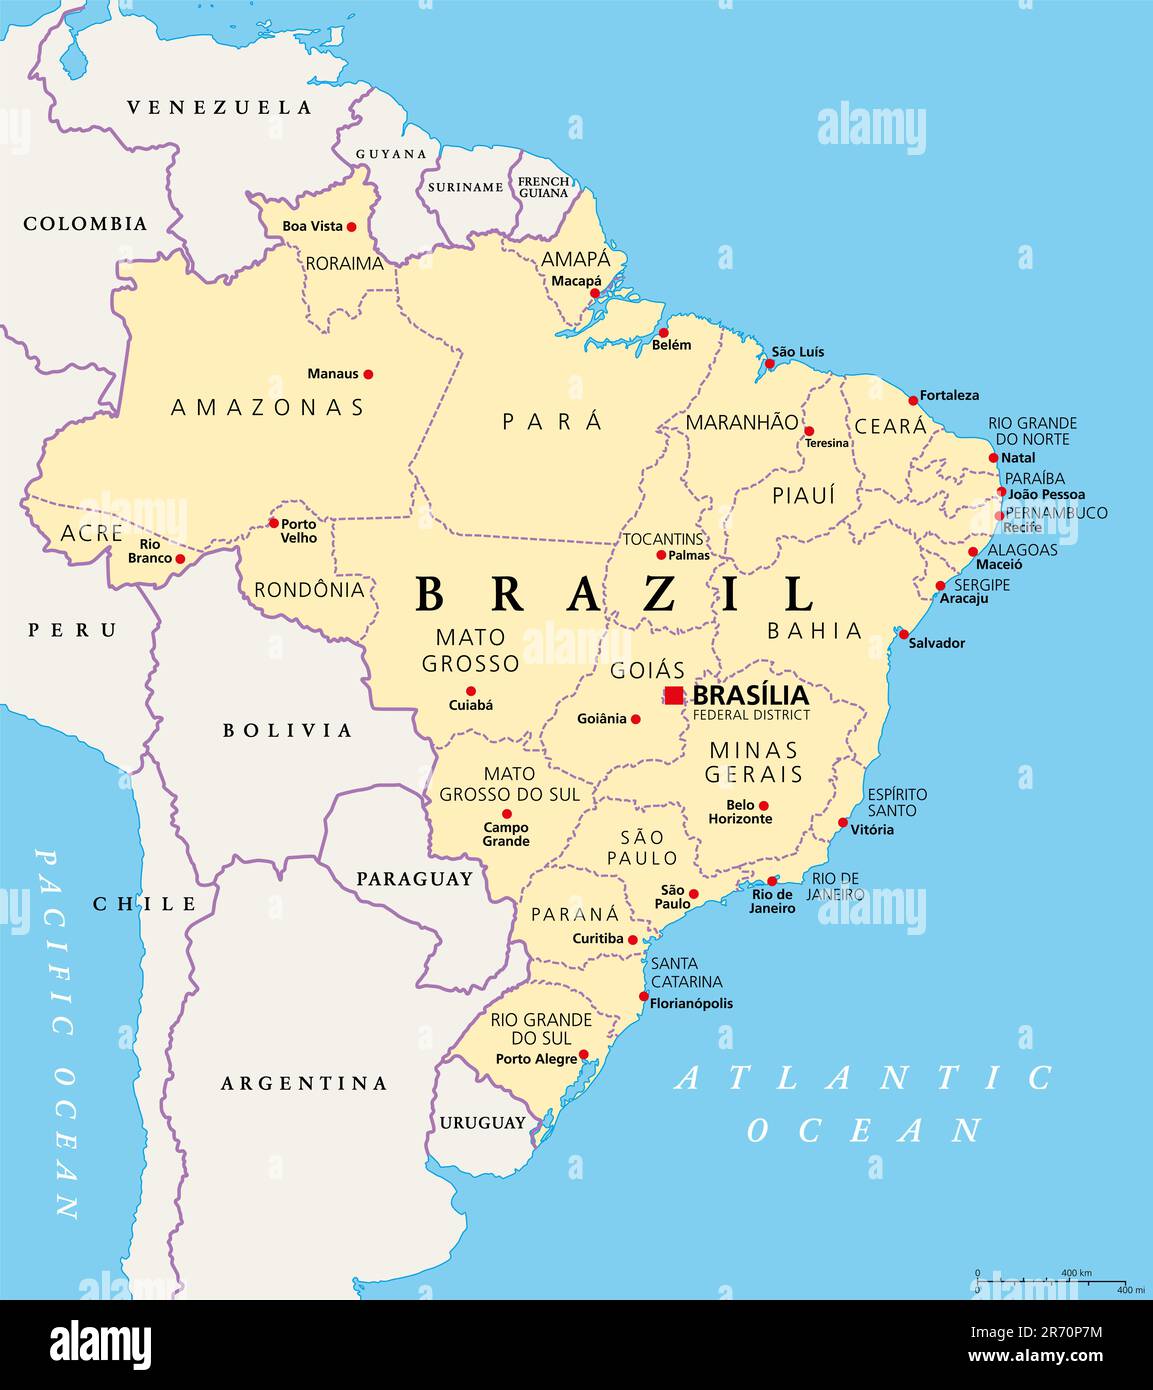 Staaten von Brasilien, politische Karte. Föderative Einheiten mit Grenzen und Hauptstädten. Subnationale Einrichtungen mit einem gewissen Grad an Autonomie. Stockfoto